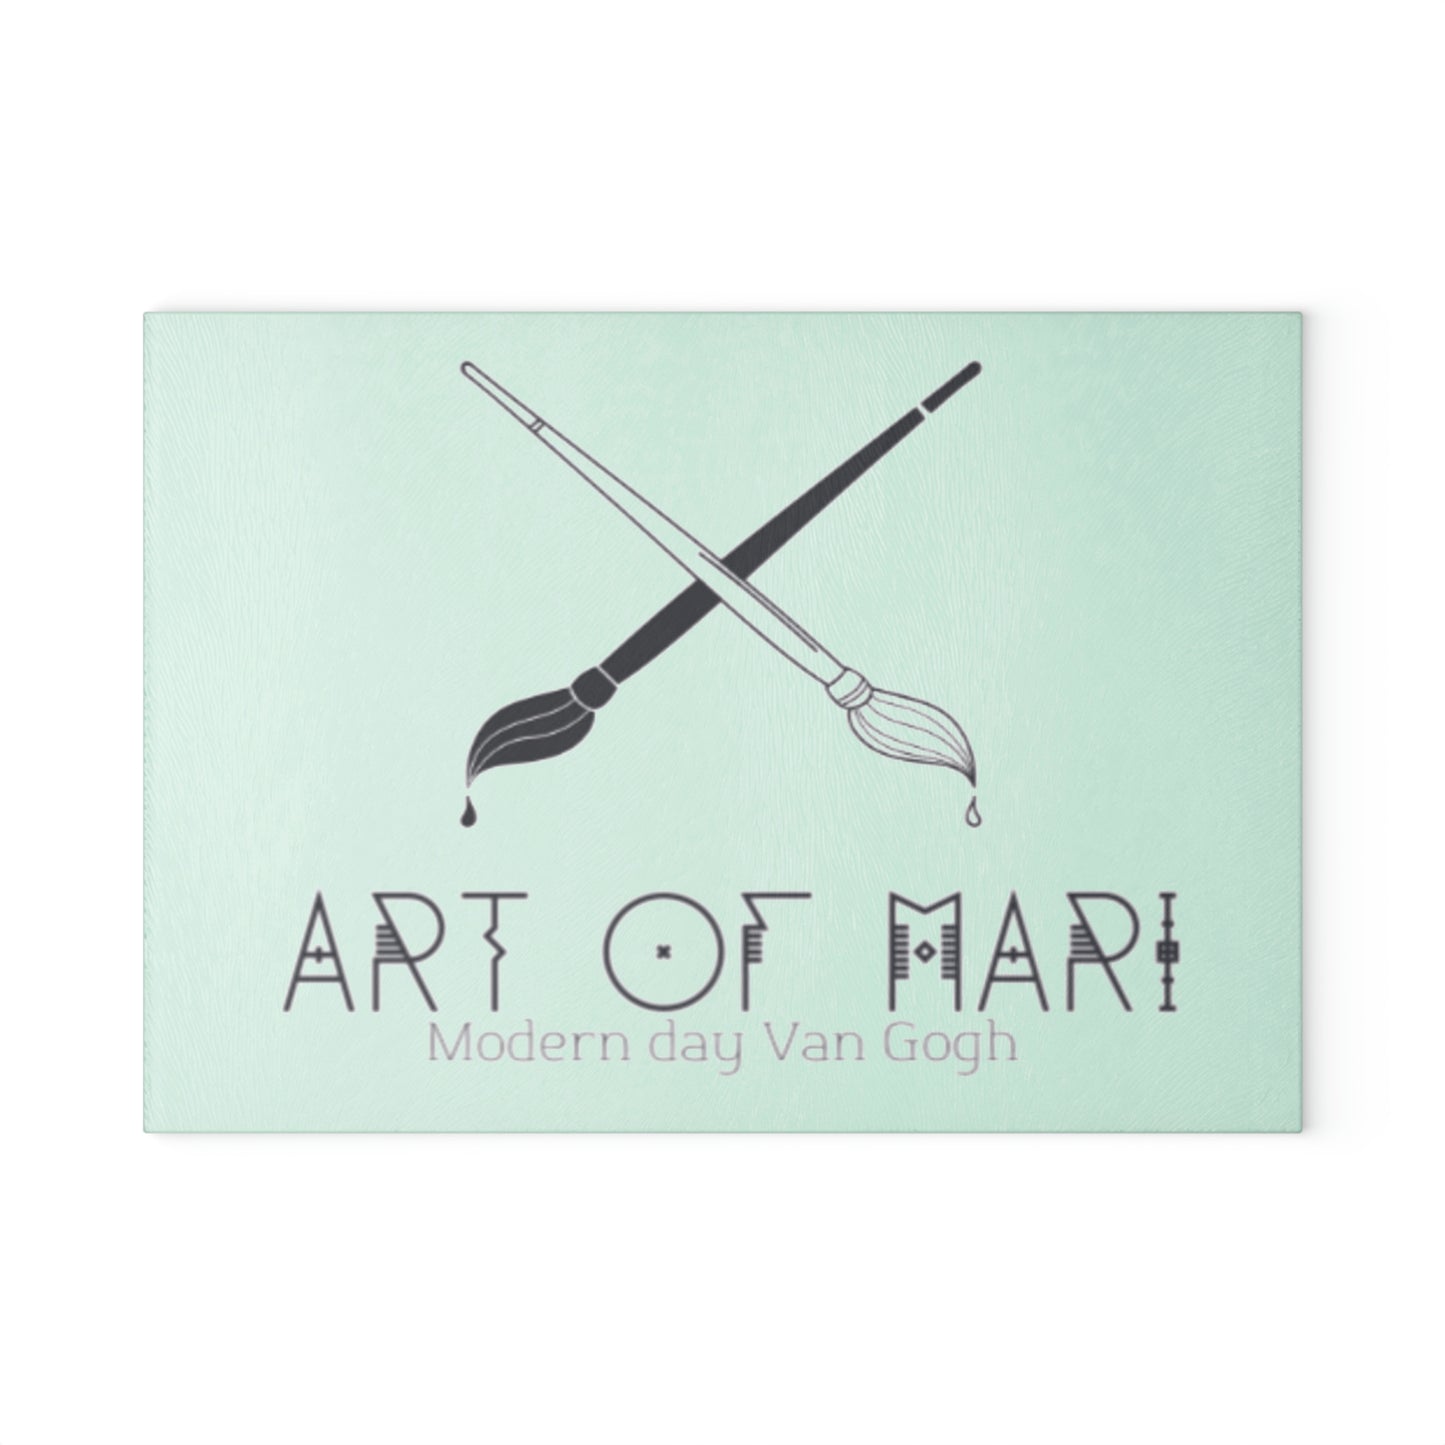 Art of Mari Accessories, glass cutting board